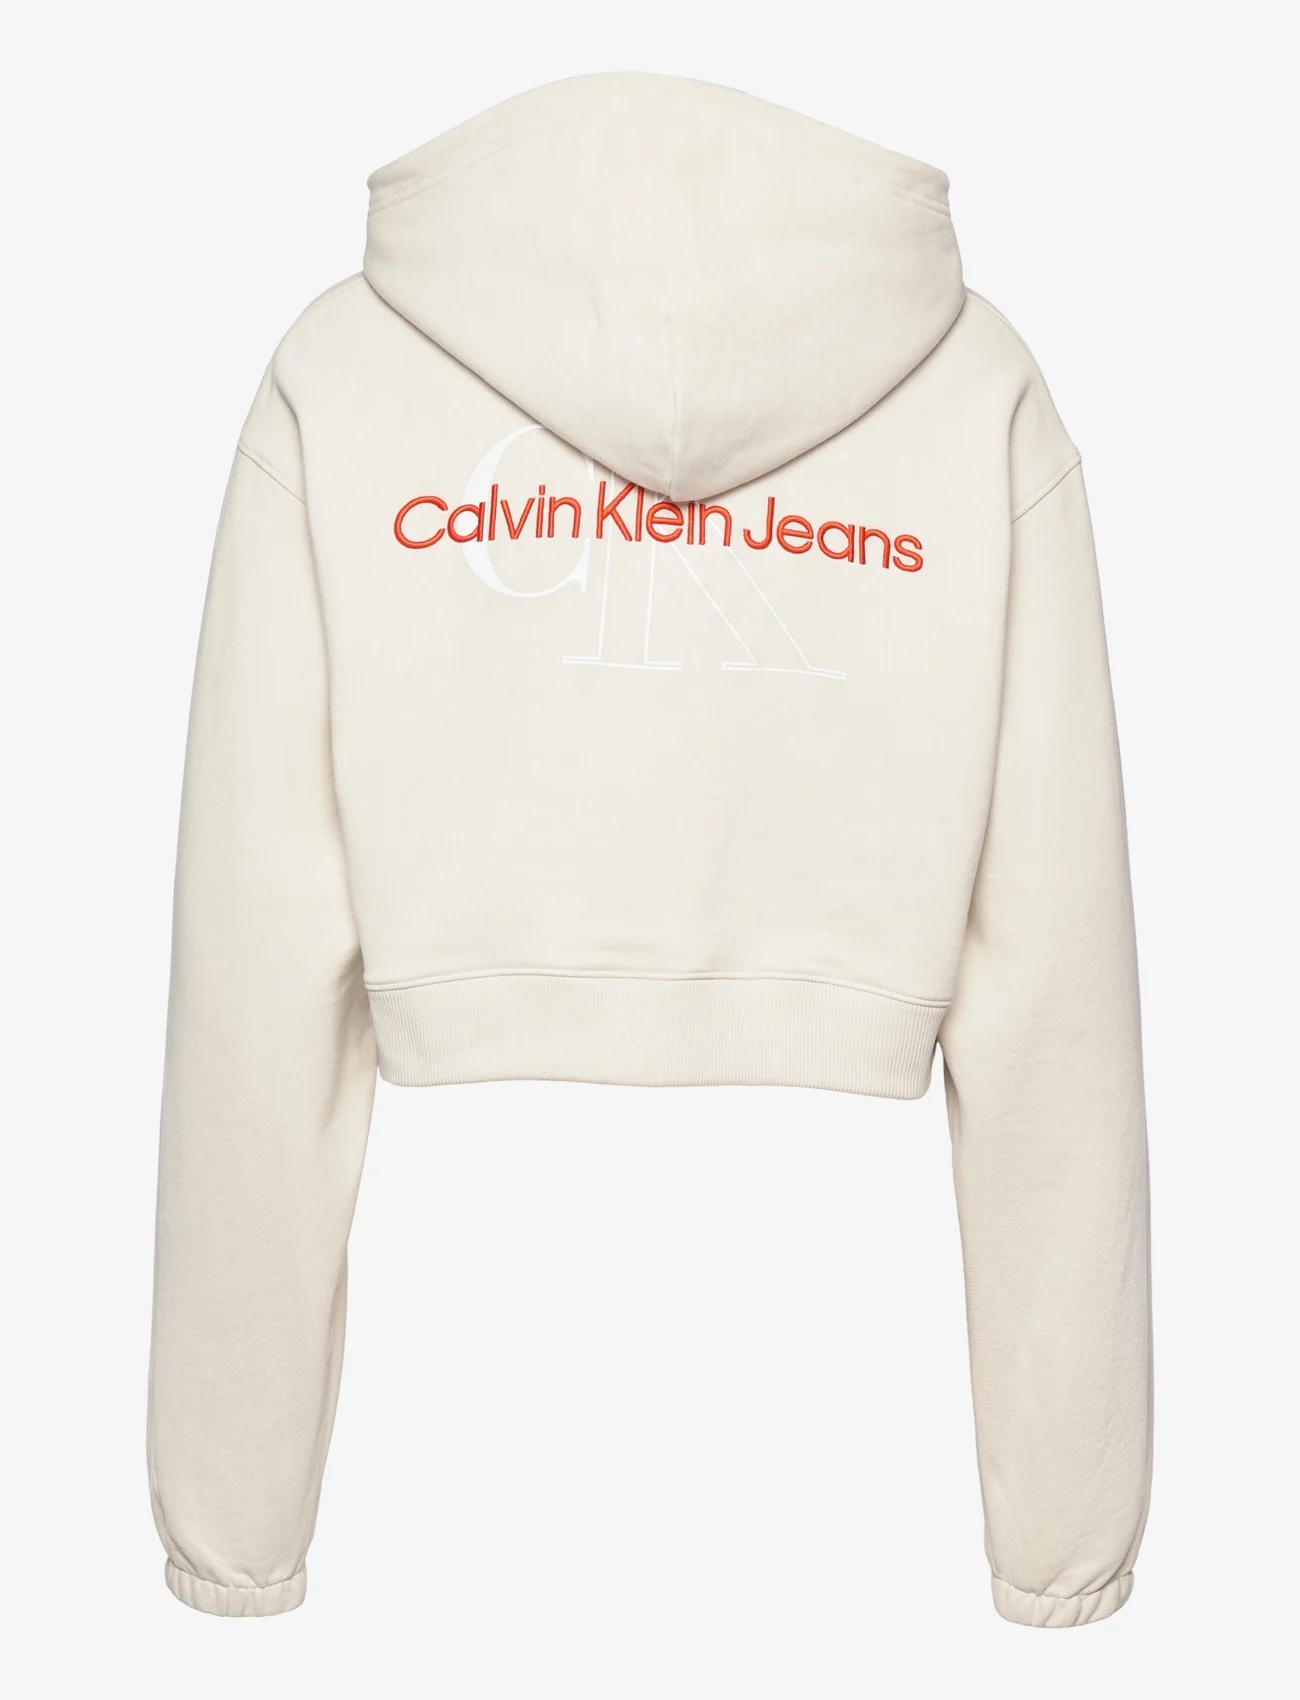 Calvin Klein Jeans Two Tone Monogram Hoodie - Hoodies 